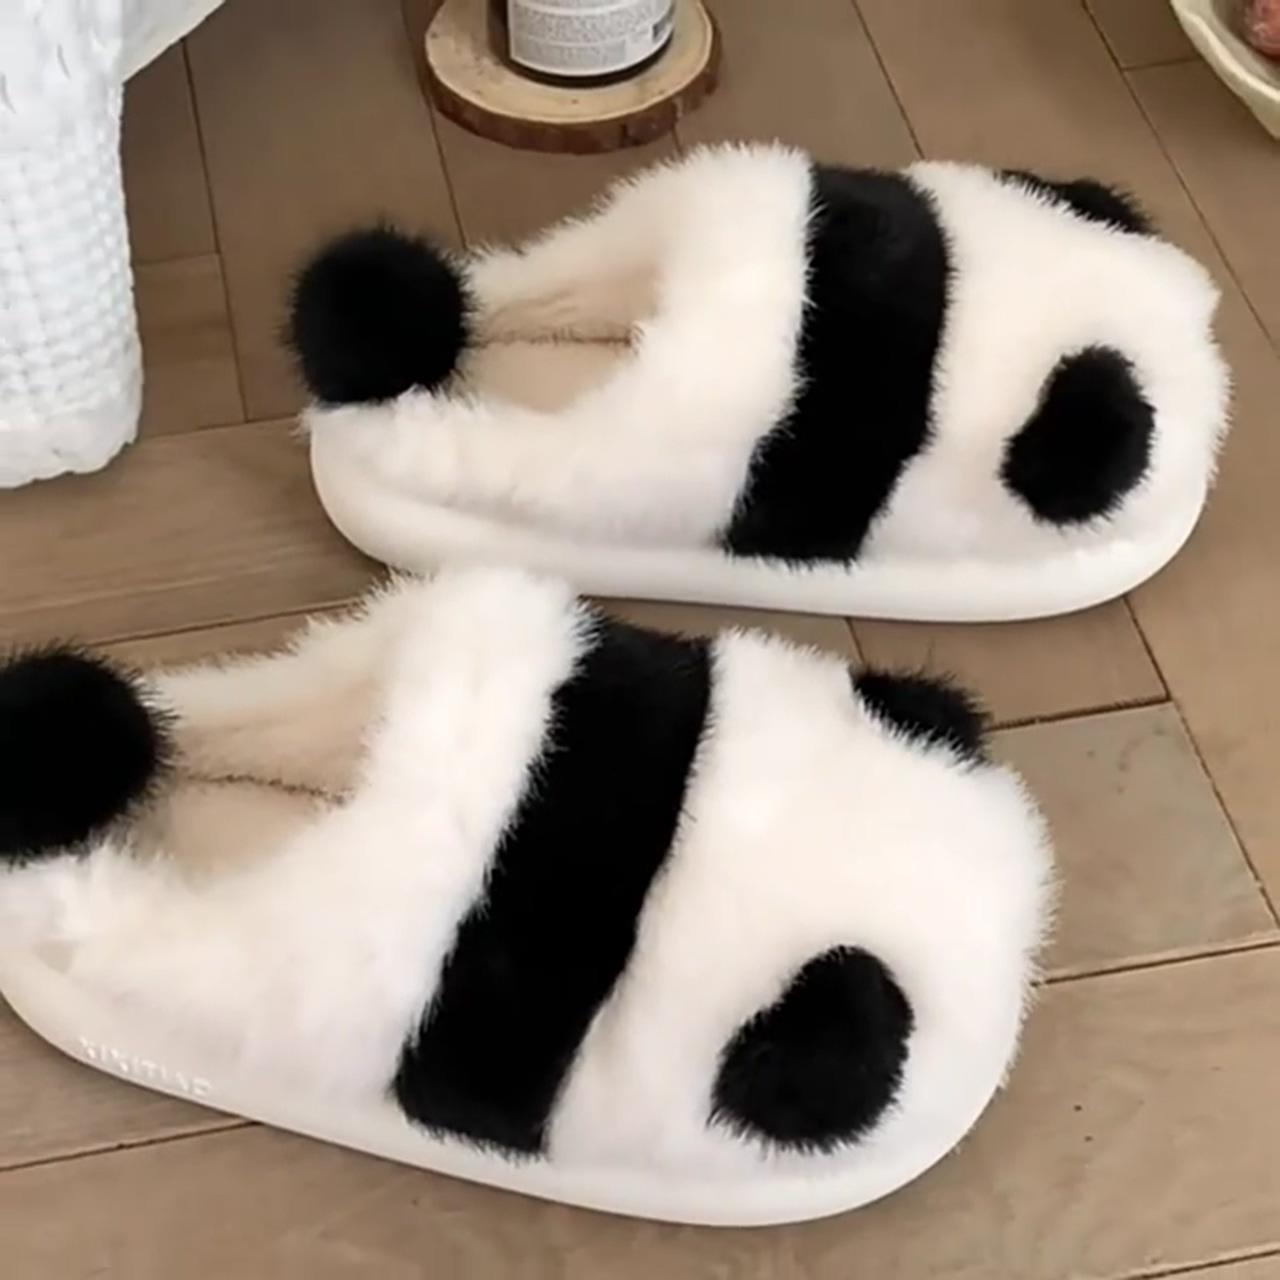 Cute panda plush home warm winter slippers, zakapop; shake, shake, shake, having fun and snacks